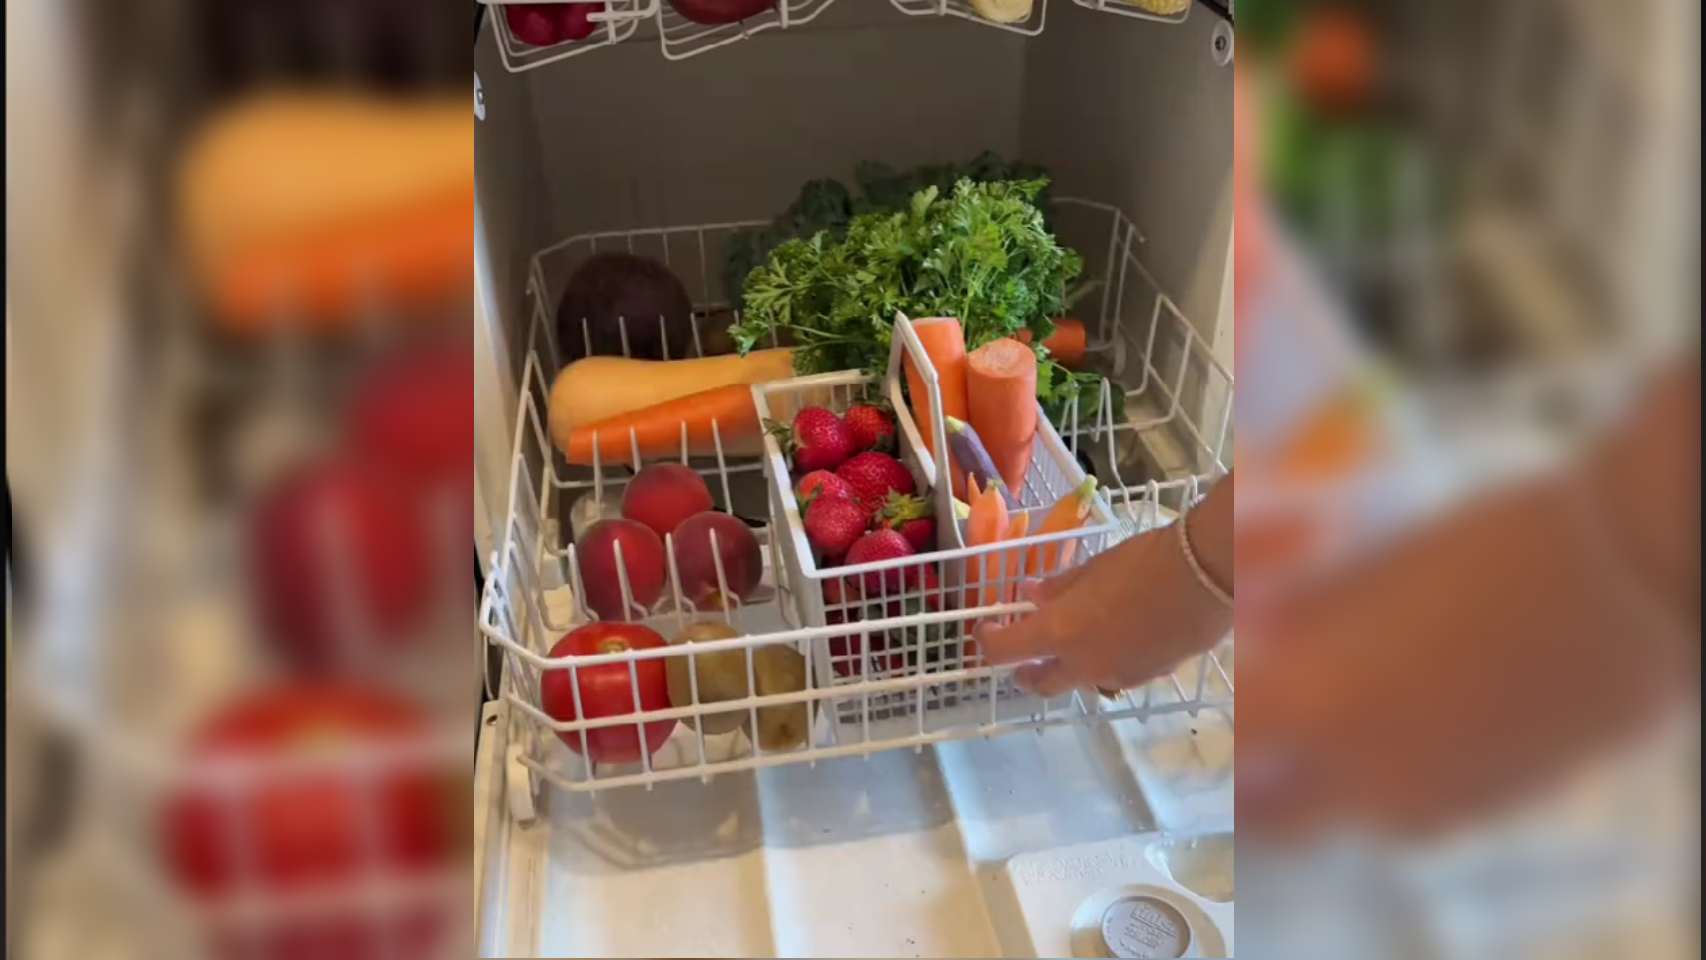 Una usuaria de TikTok coloca frutas y hortalizas en el lavaplatos para desinfectarlas